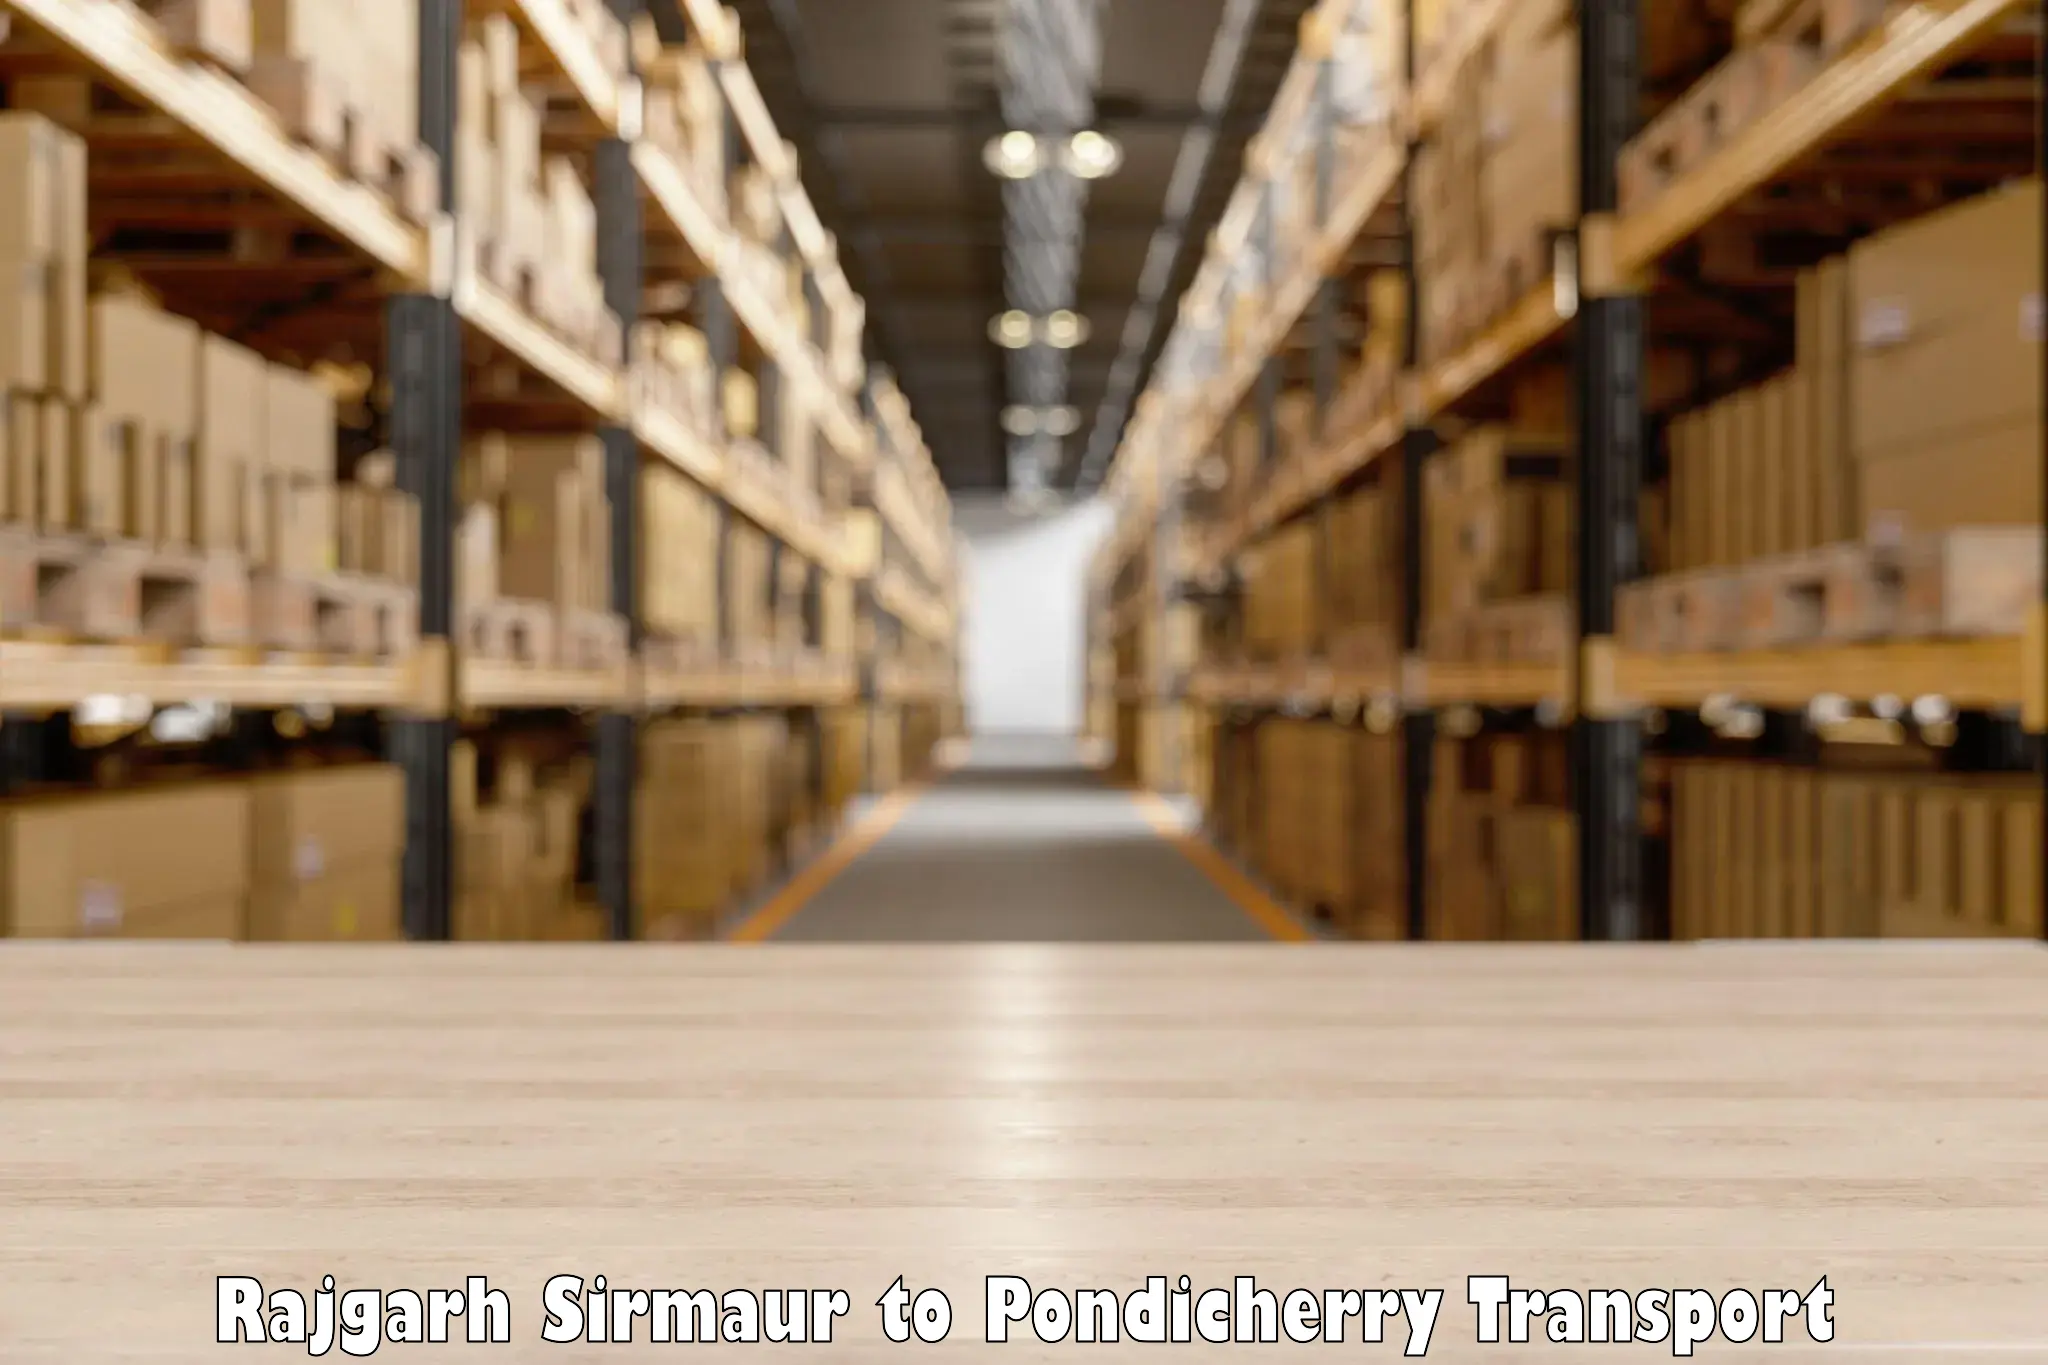 Delivery service Rajgarh Sirmaur to Pondicherry